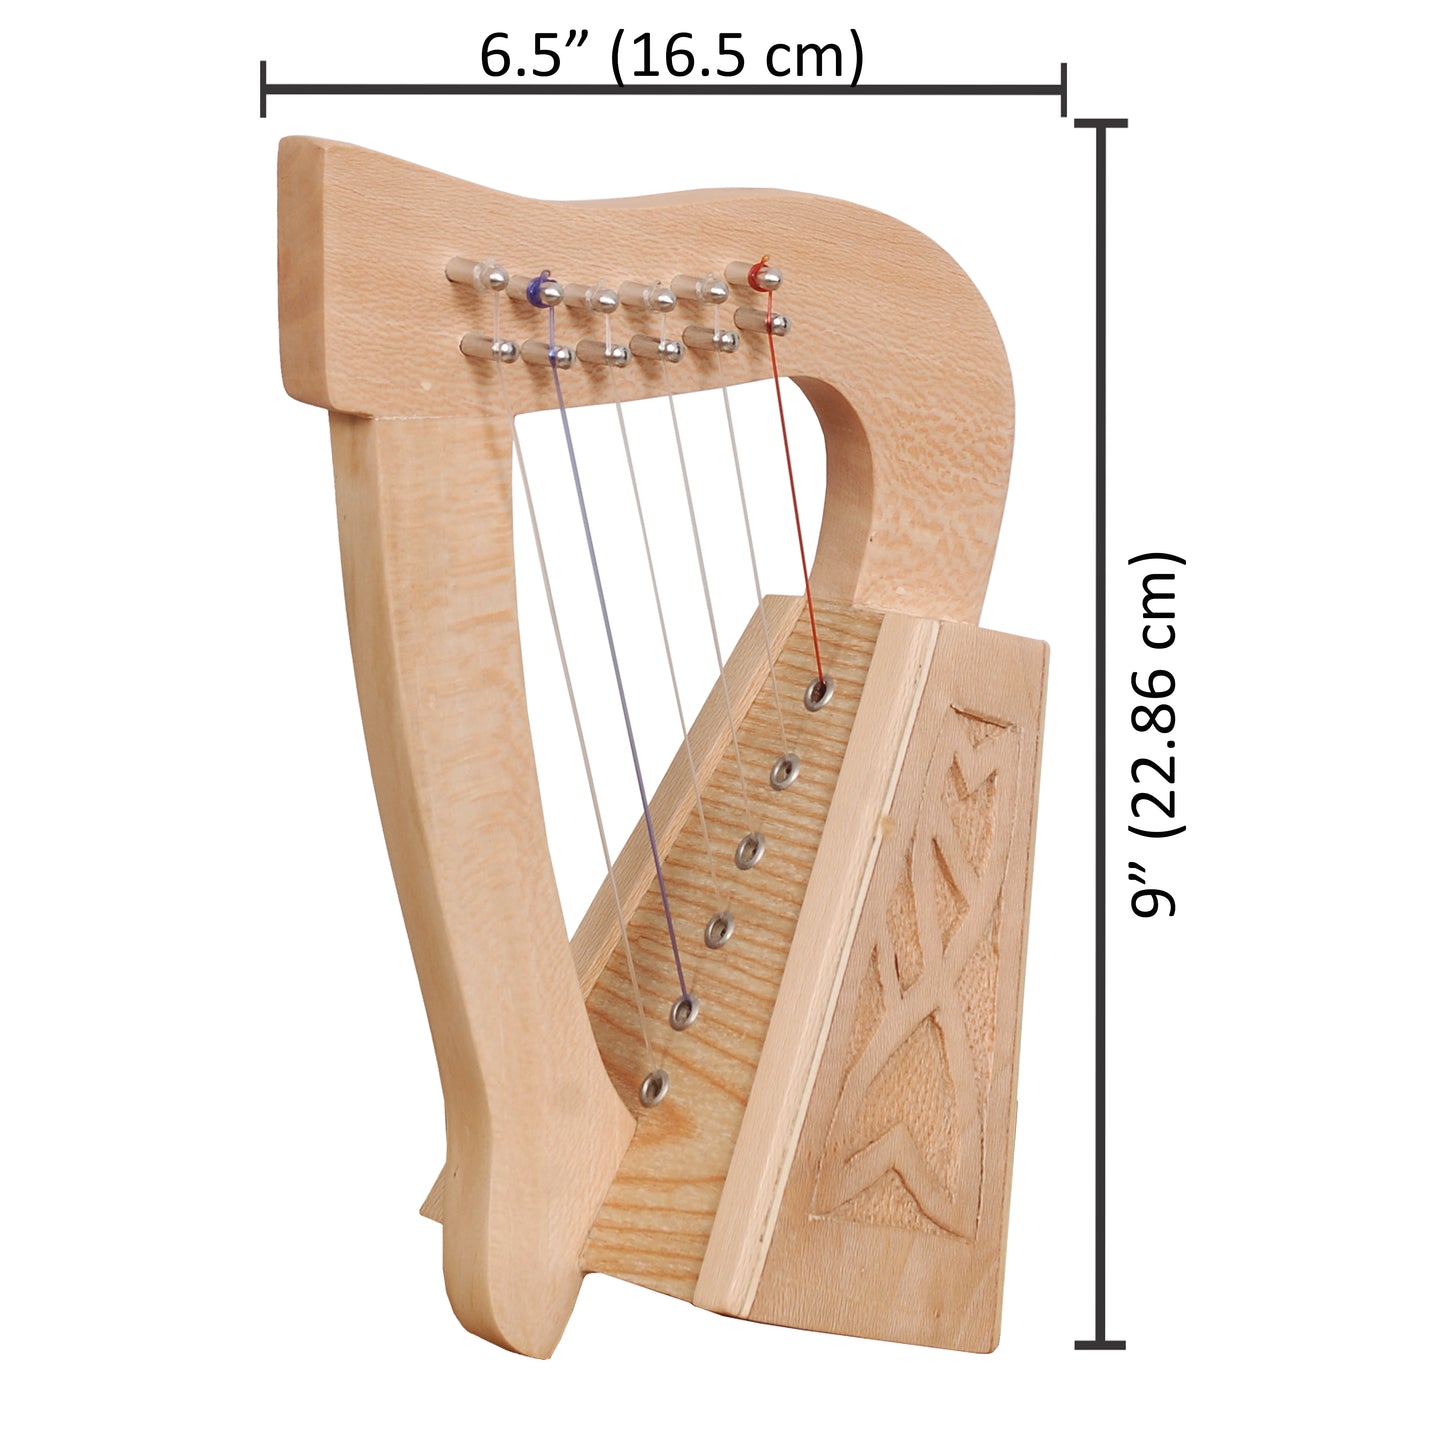 O'Carolan Harp, 6 String Lacewood Knotwork